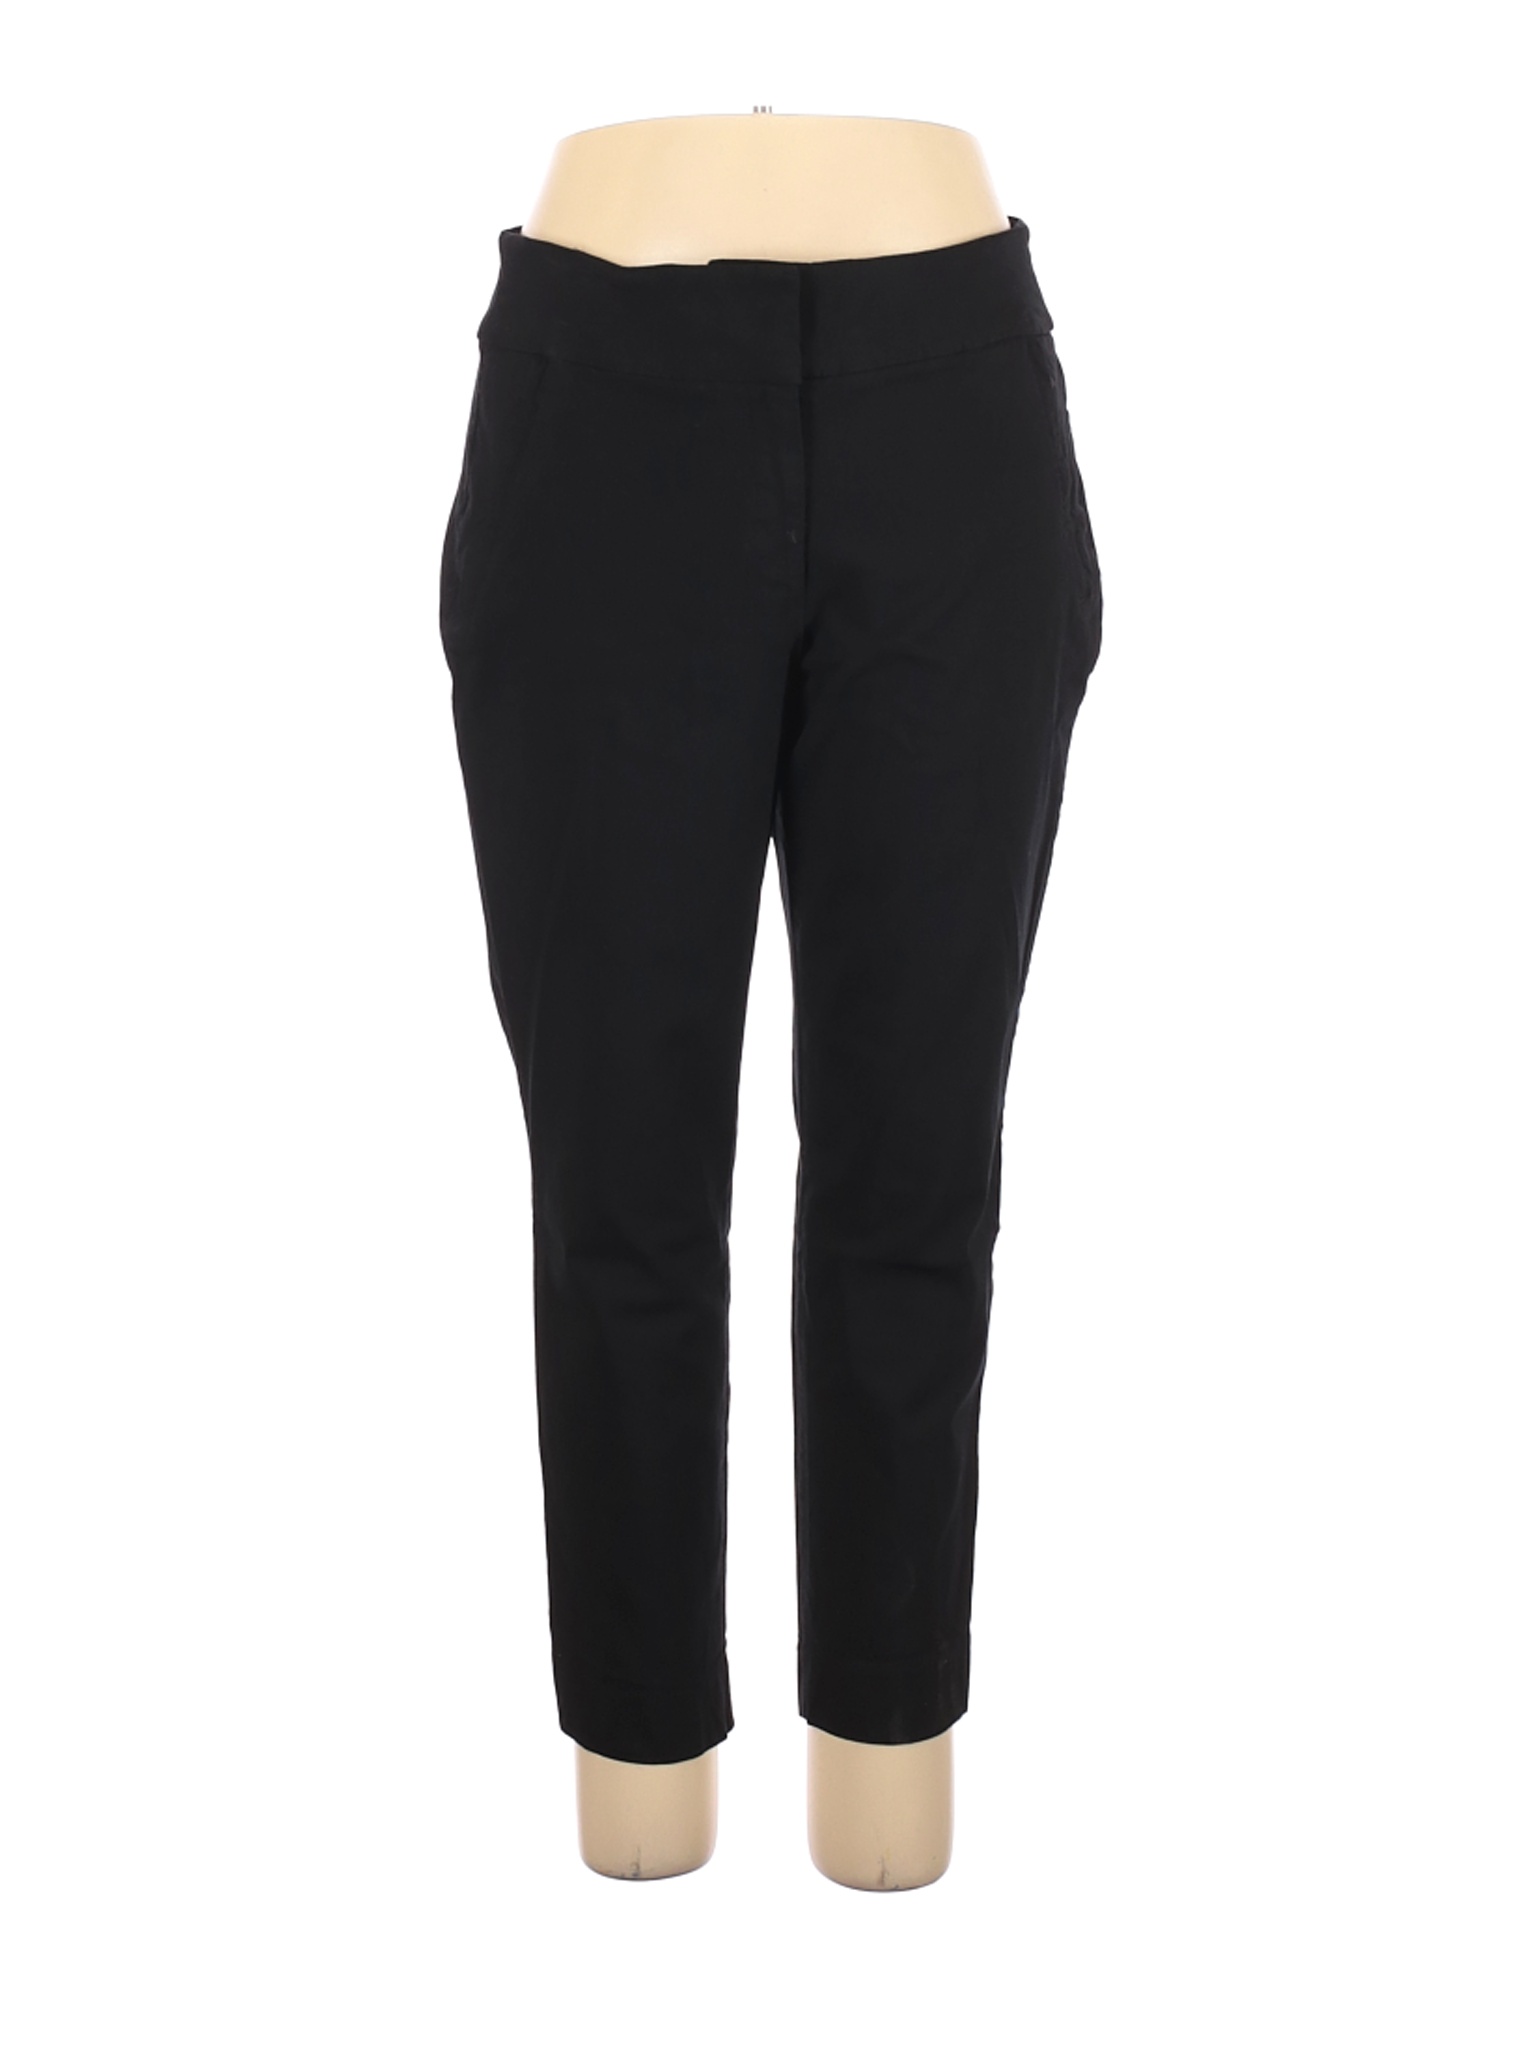 Lane Bryant Women Black Casual Pants 18 Plus | eBay